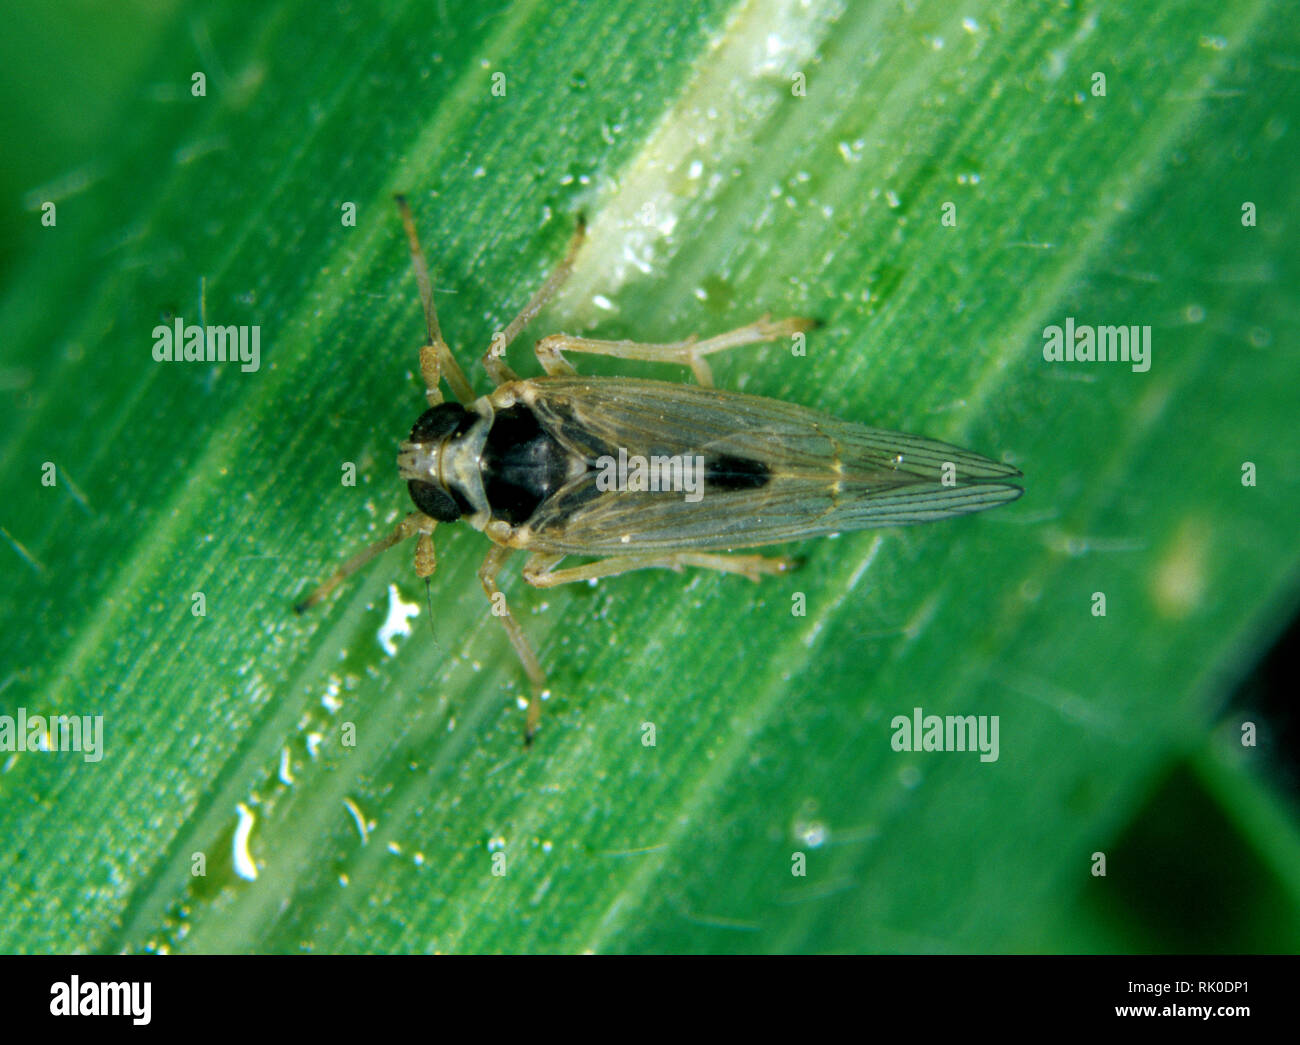 Petit Laodelphax striatellus, la cicadelle brune, adulte sur une feuille de riz Banque D'Images